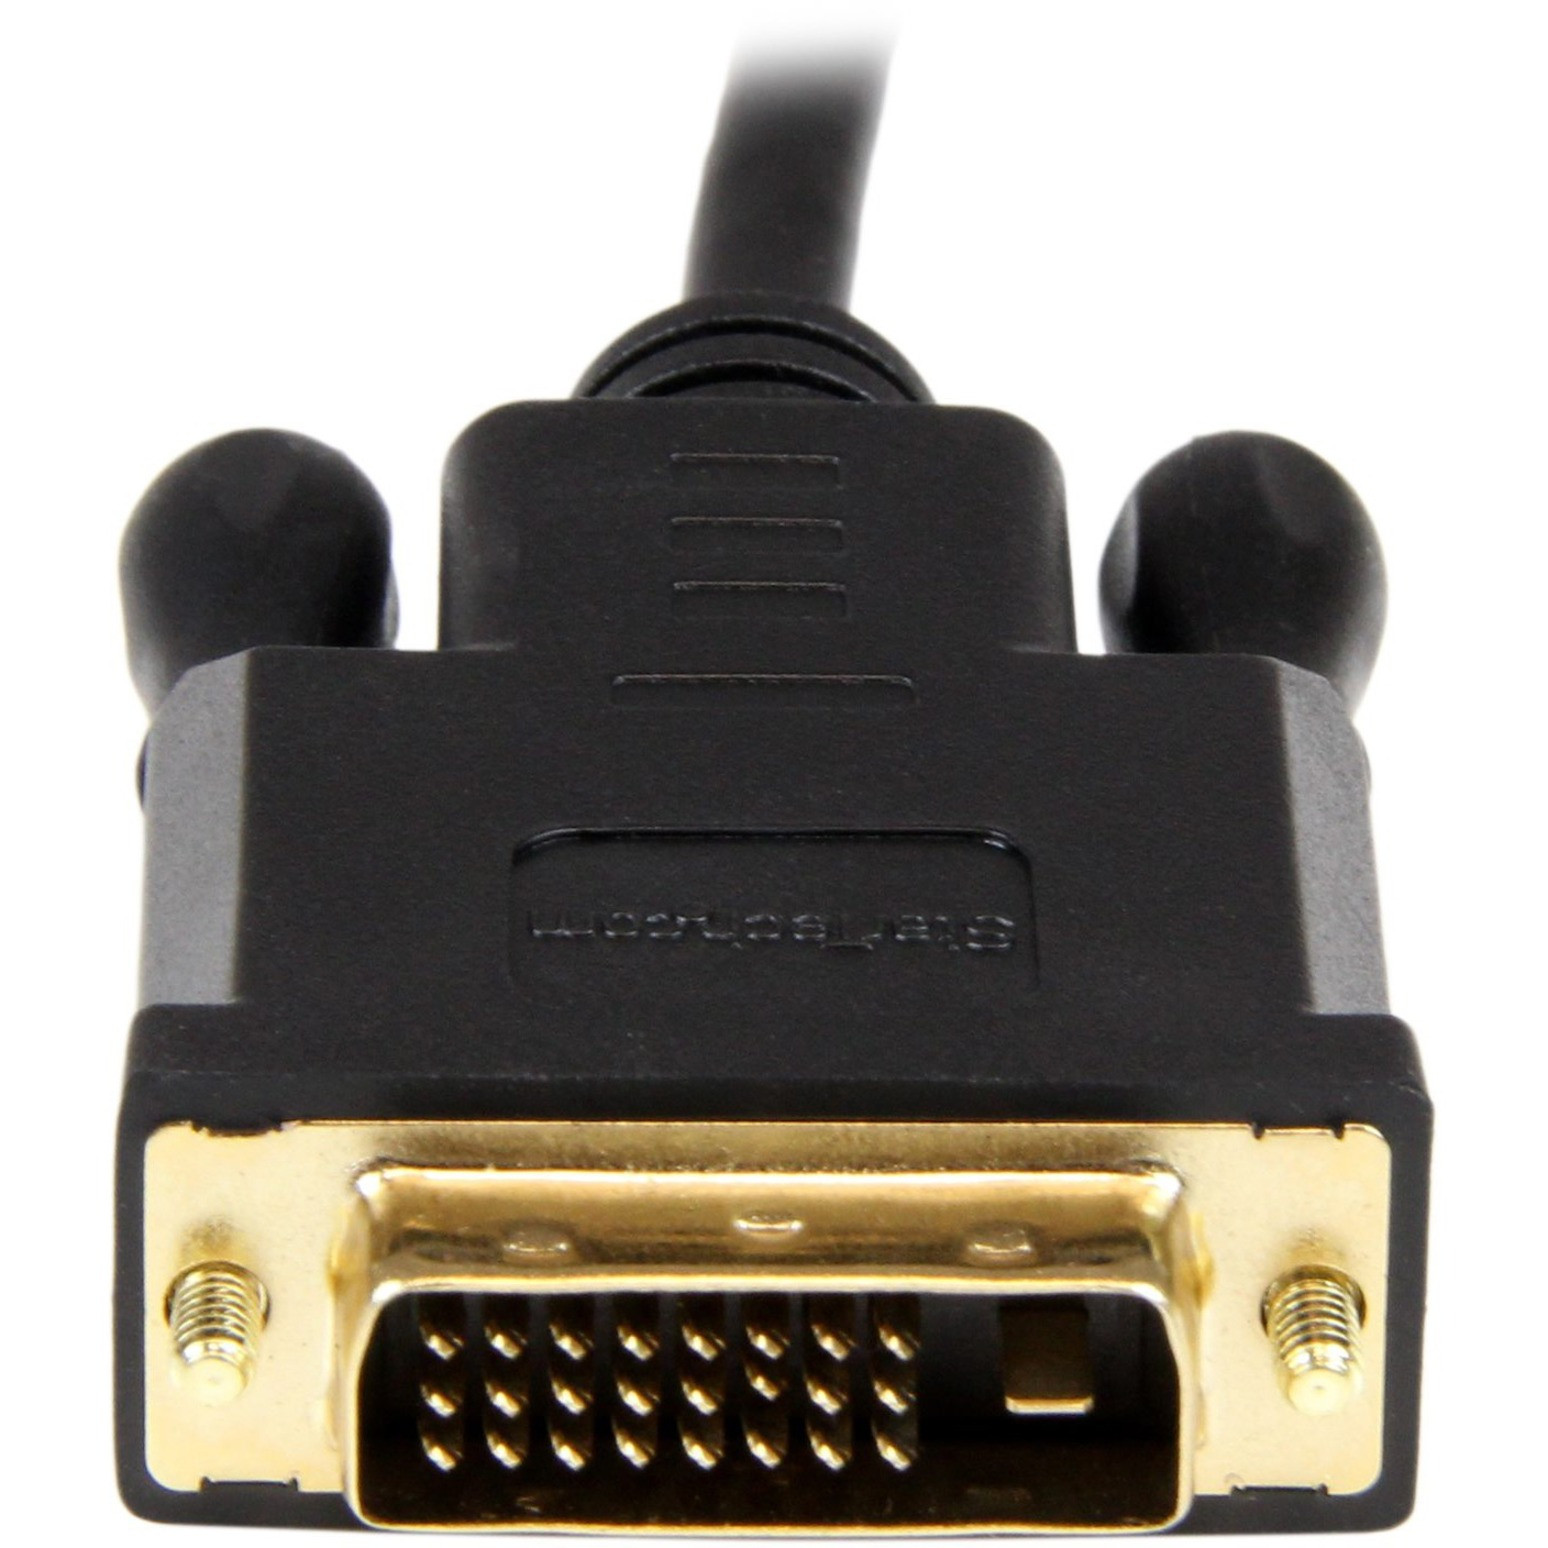 1m DVI Cable